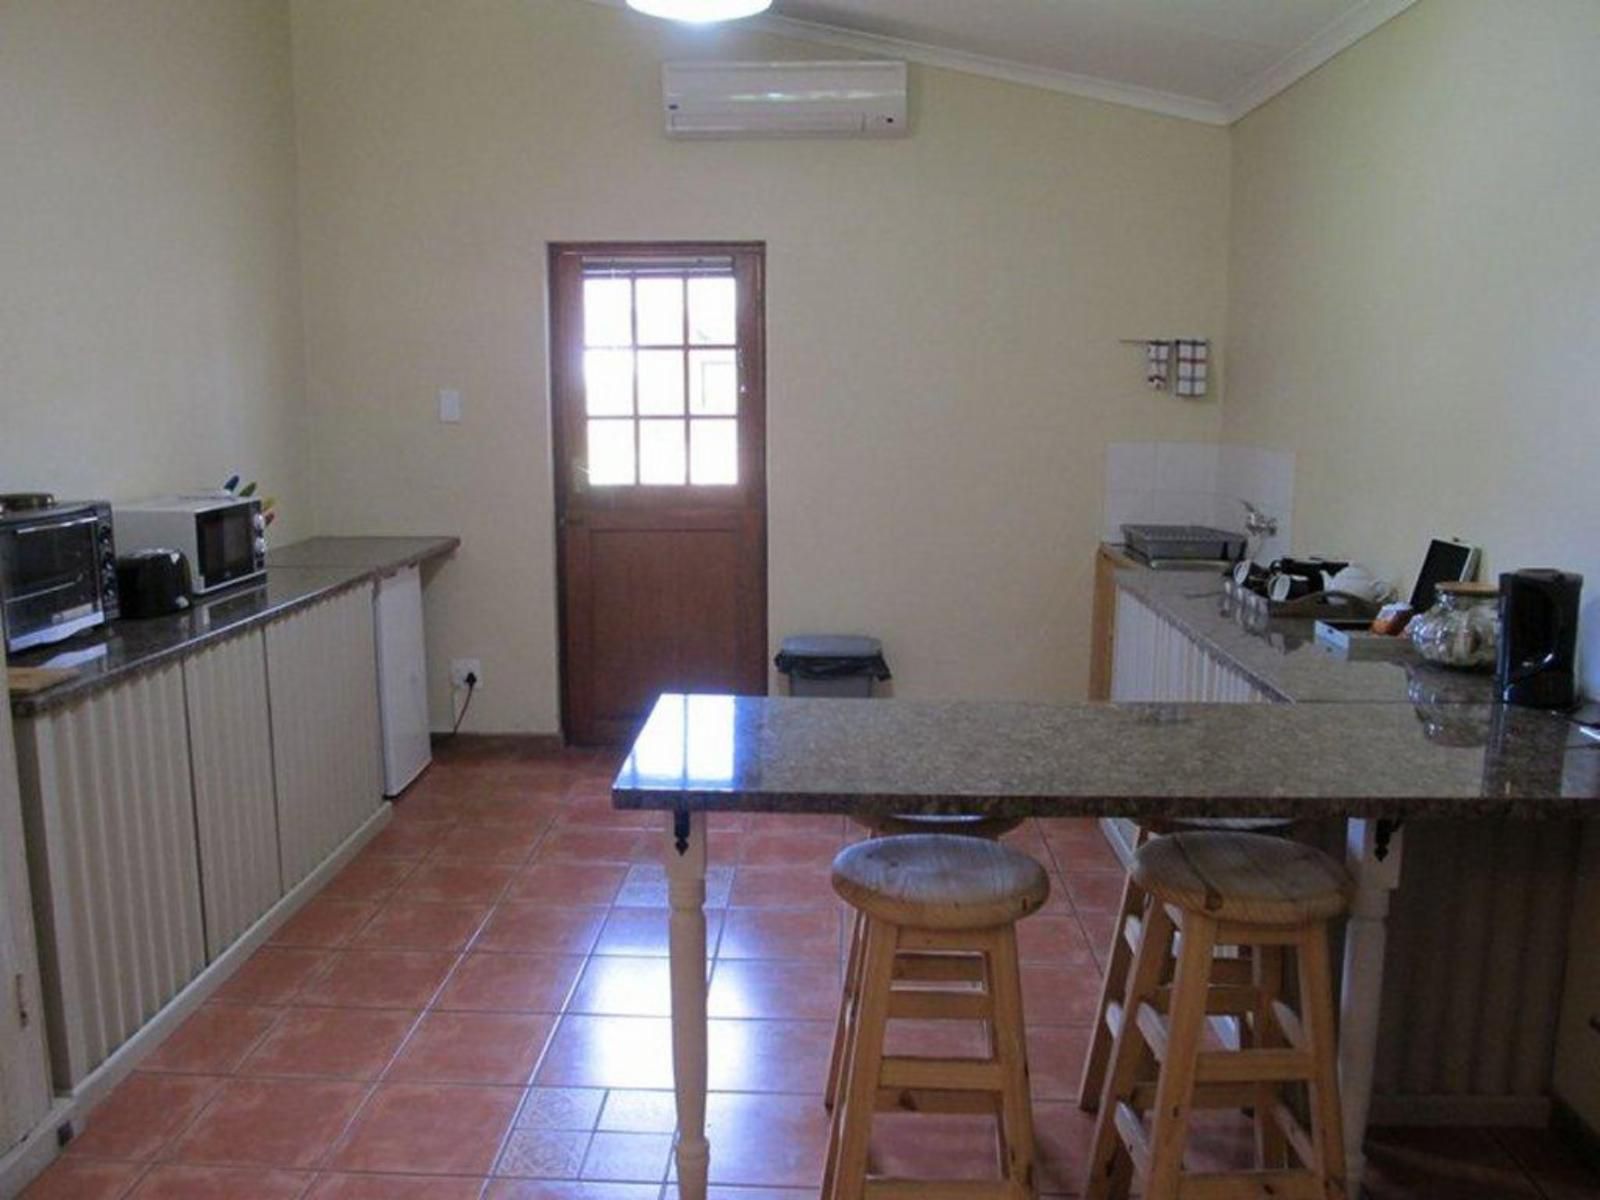 Avondrust Guest House Graaff Reinet Eastern Cape South Africa 